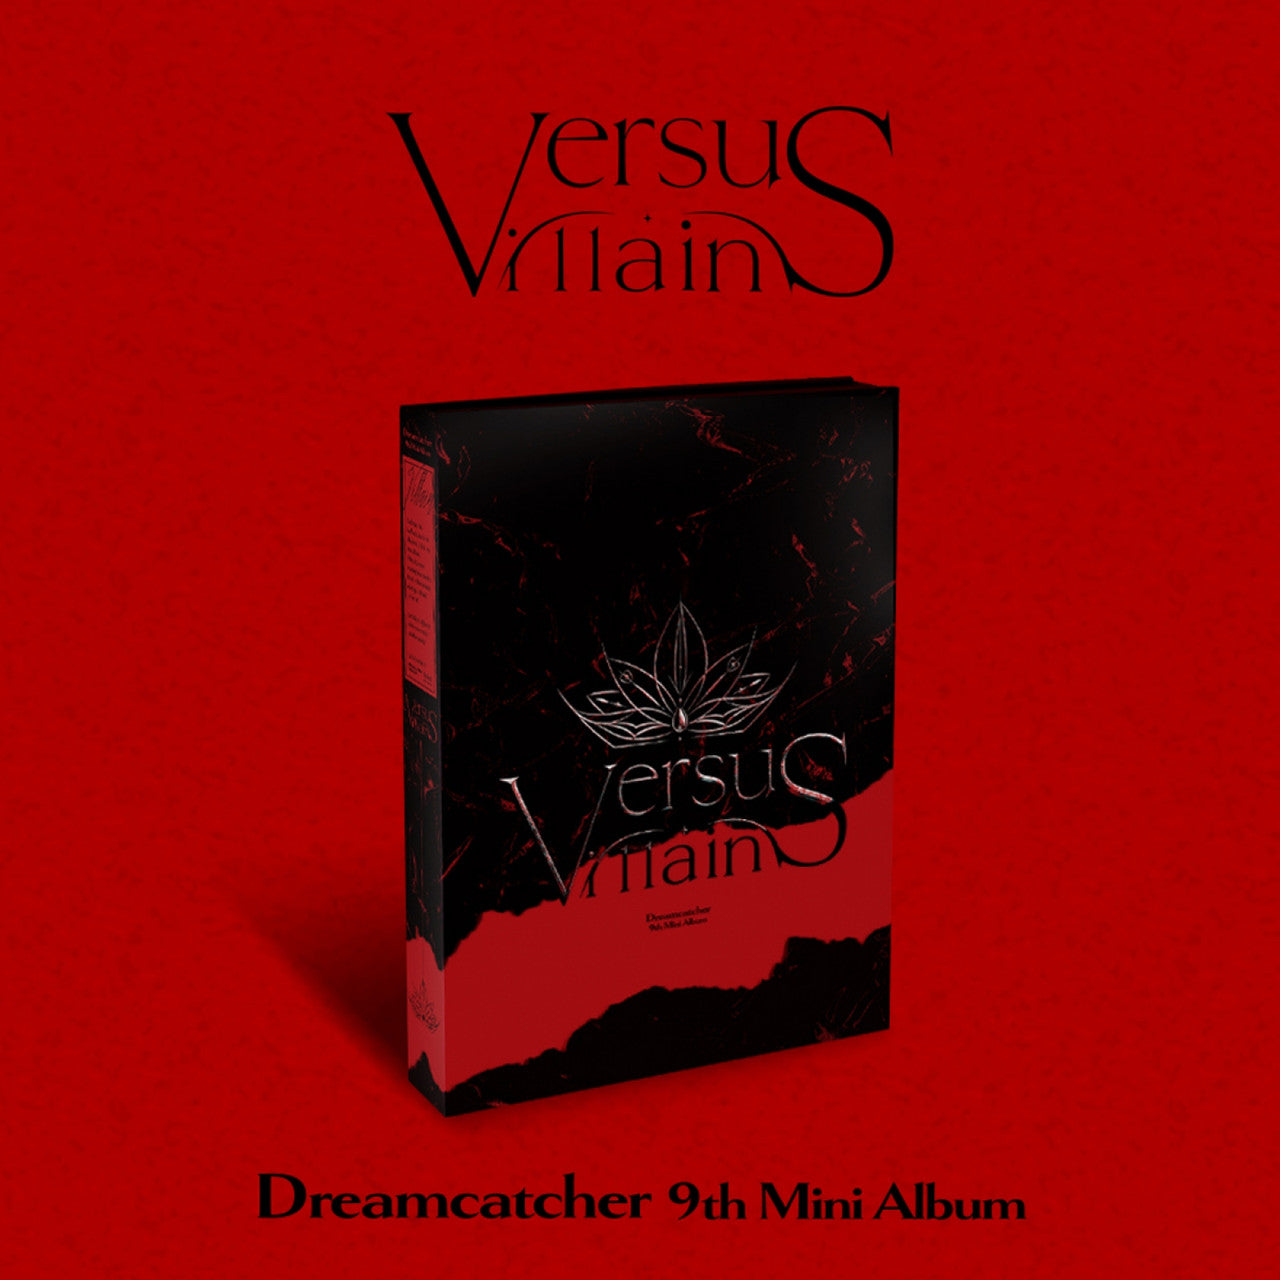 Dreamcatcher 9th Mini Album VillainS Limited Edition - C Version